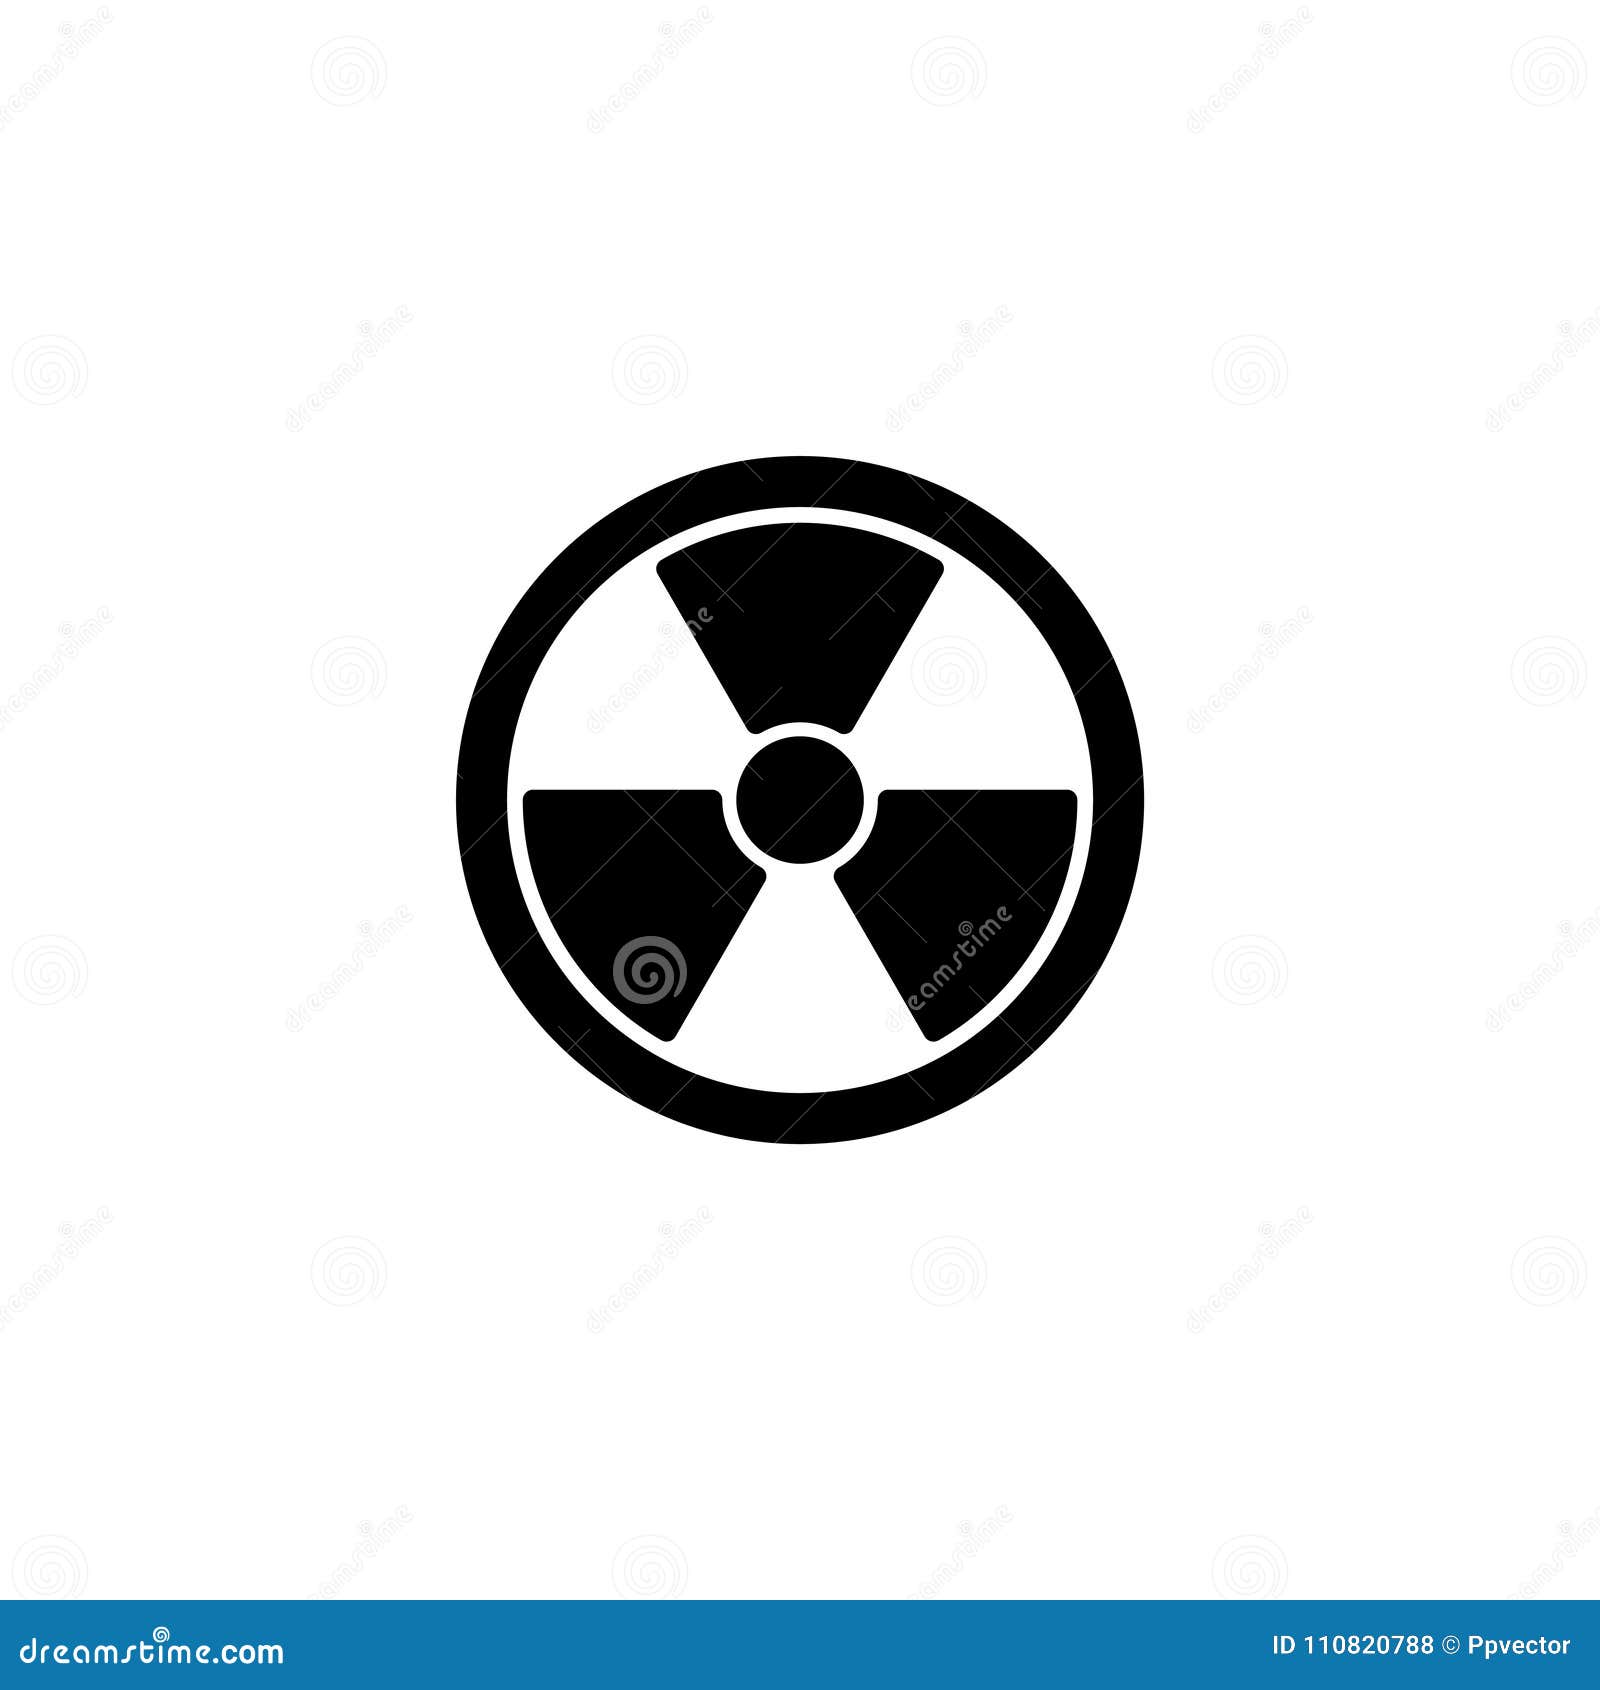 Ikone Strahlungsgefahrensymbolzeichen. Fahrbarer Traktor auf einem weißen Hintergrund Strahlungsgefahrensymbolzeichen